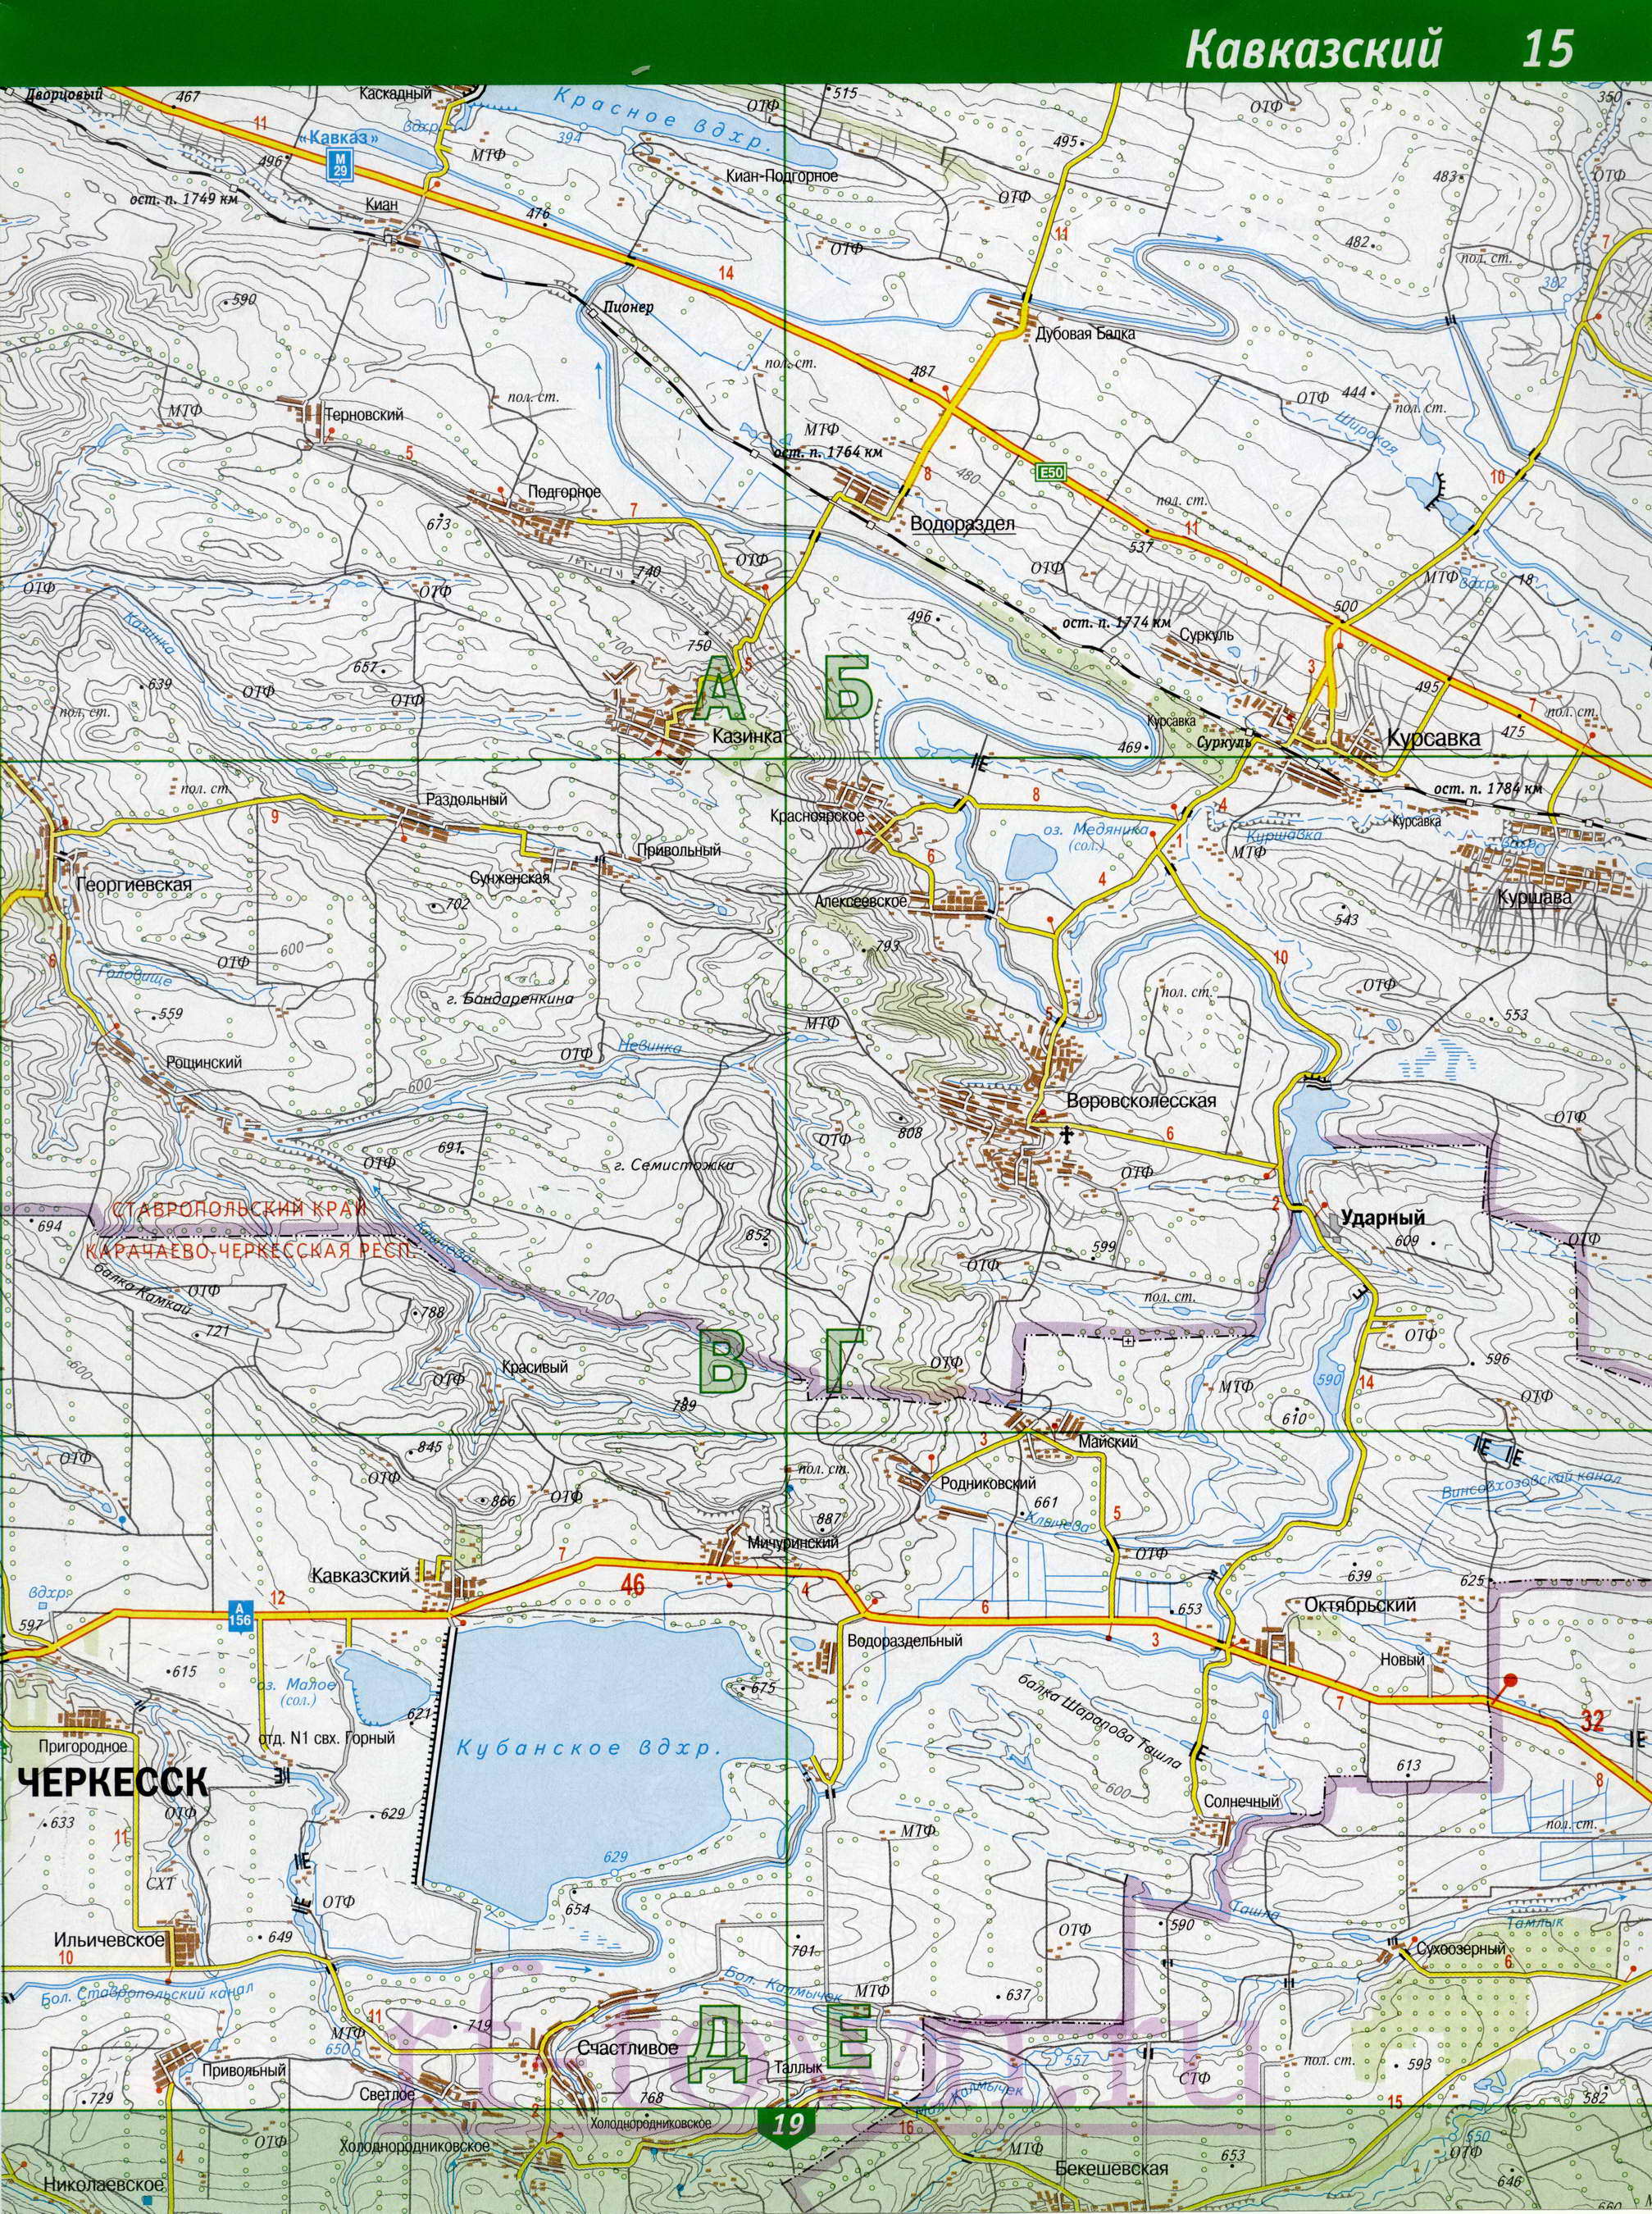 Карта Карачаево-Черкесской республики. Подробная топографическая карта Карачаево-Черкесская республика. Большая карта Карачаево-Черкесии масштаба 1см:2км, D0 - 